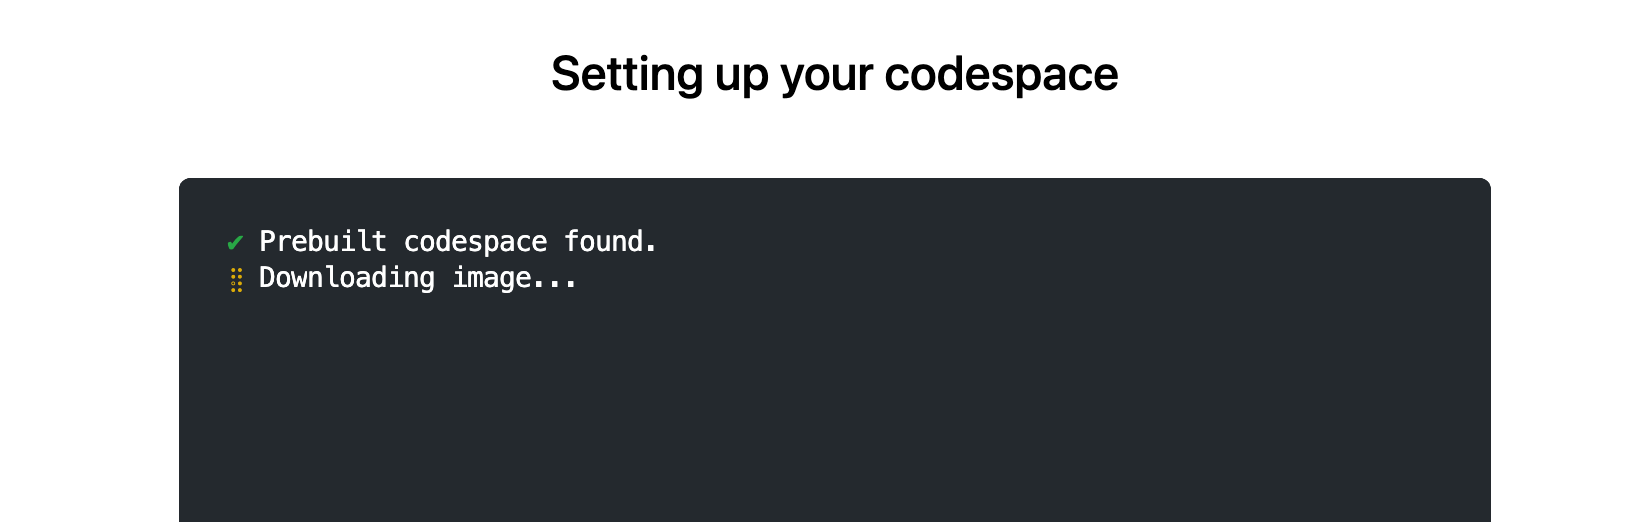 Снимок экрана: страница "Настройка codespace" с текстом "Найдено предварительно созданное пространство кода. Скачивание образа".